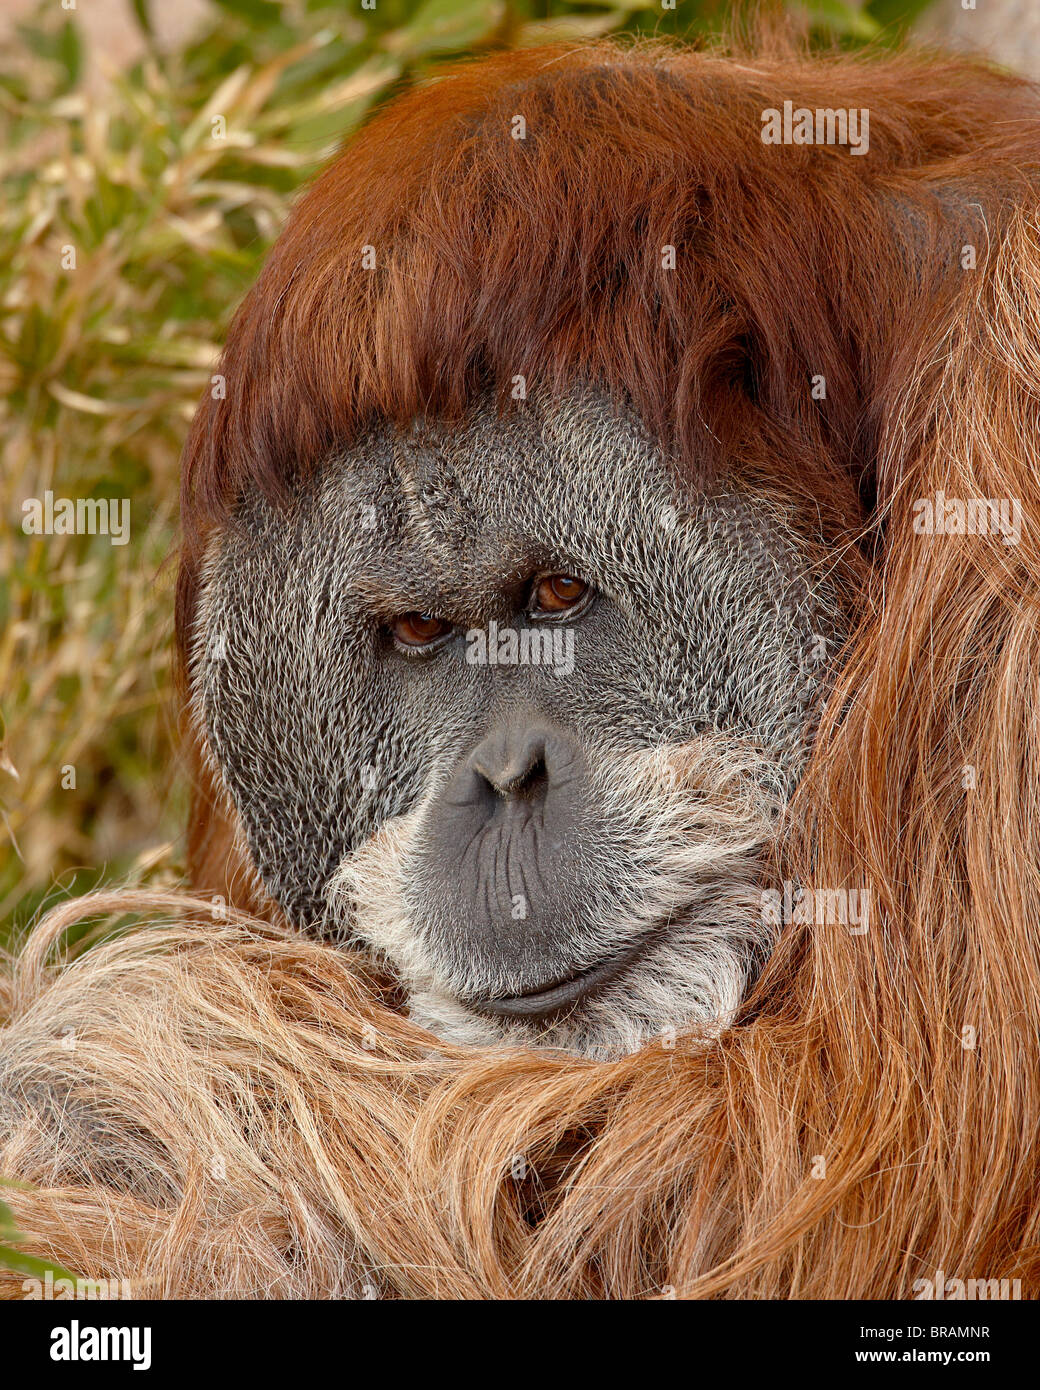 Male Orangutan (Pongo pygmaeus) in captivity, Rio Grande Zoo, Albuquerque Biological Park, Albuquerque, New Mexico, USA Stock Photo